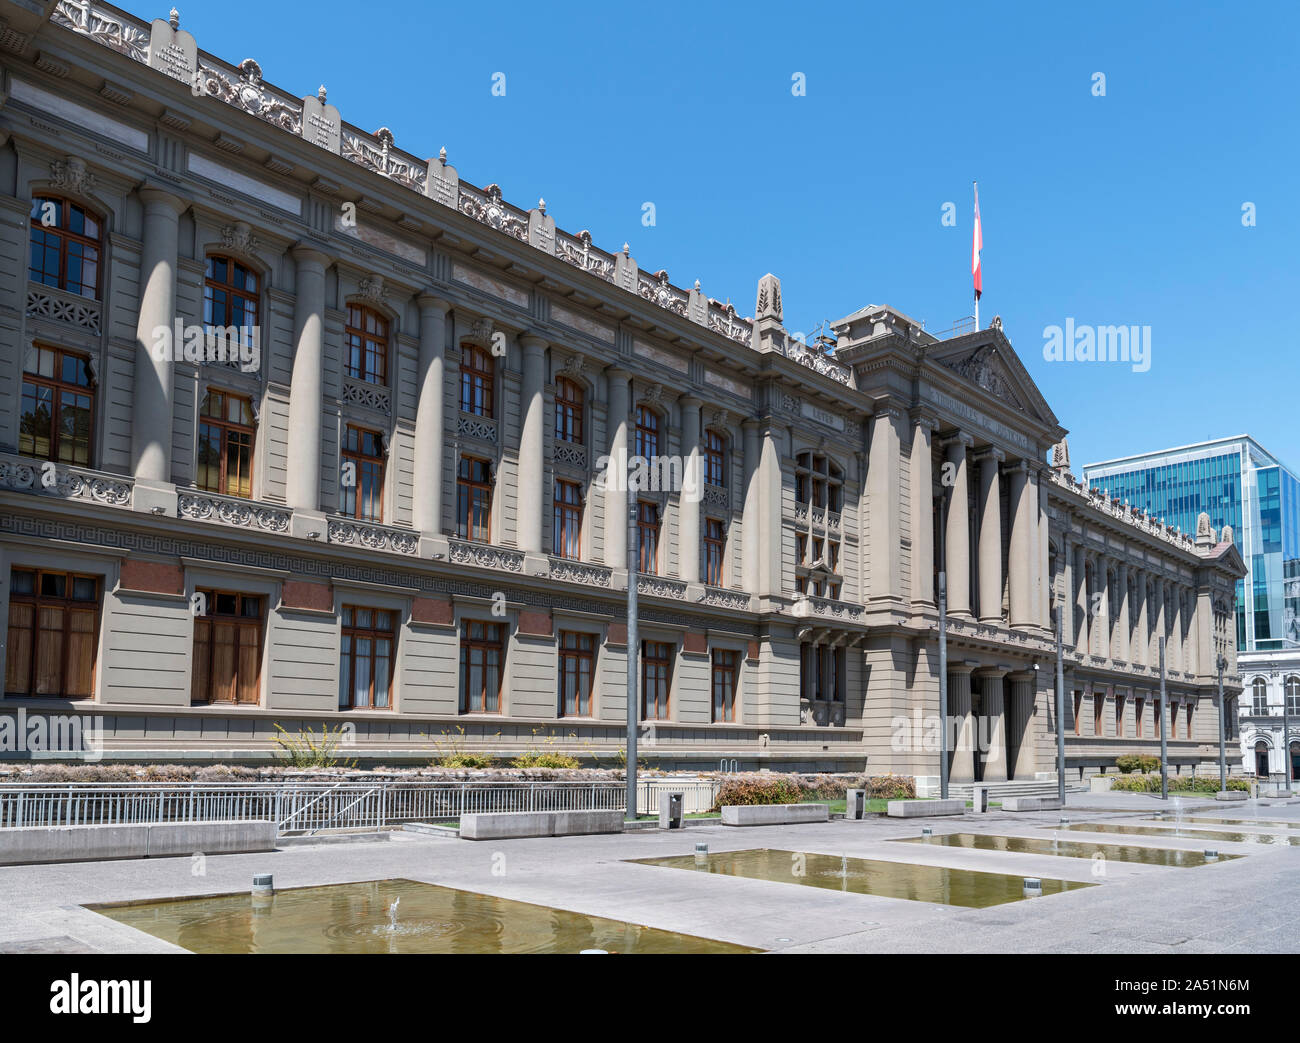 Palacio de los Tribunales de "Justicia (die Justiz Gerichte Palast), die Häuser der Oberste Gerichtshof Chiles, Santiago, Chile, Südamerika Stockfoto